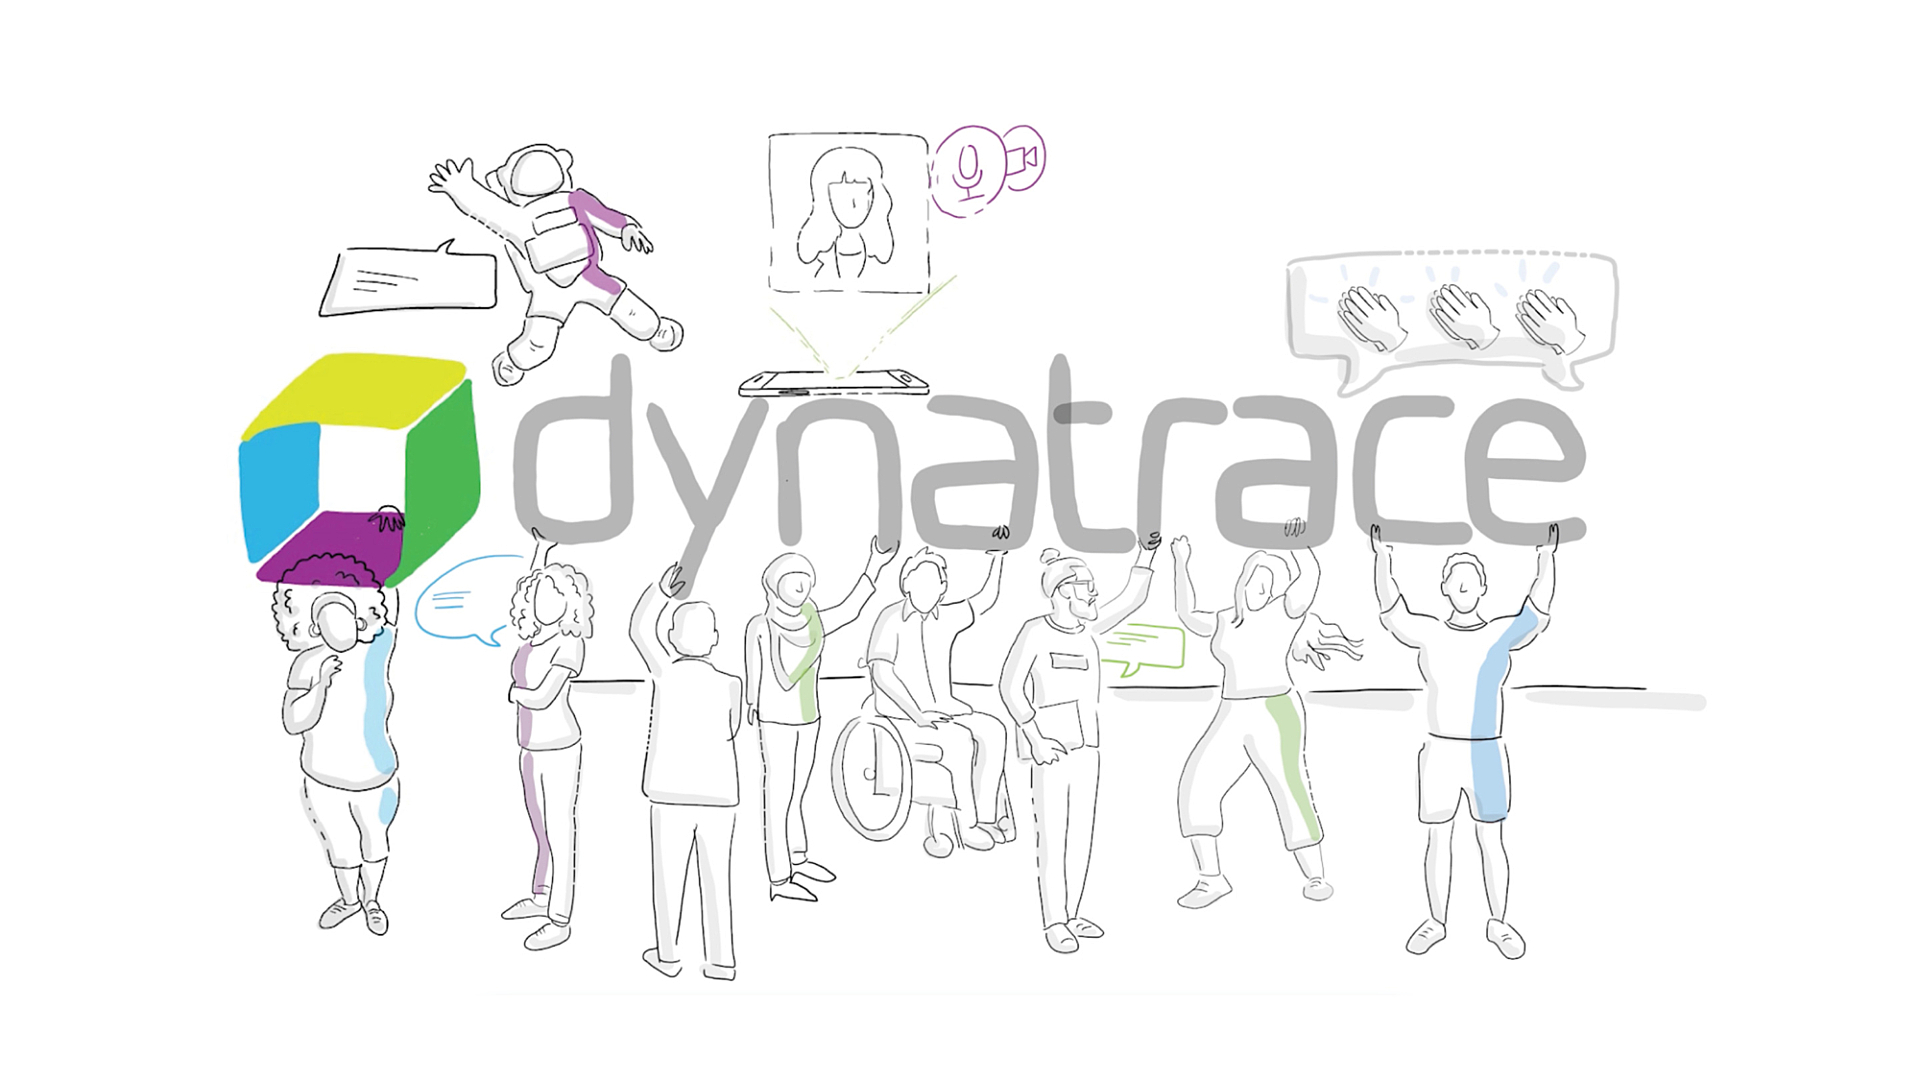 Dynatrace 的文化重視誠信